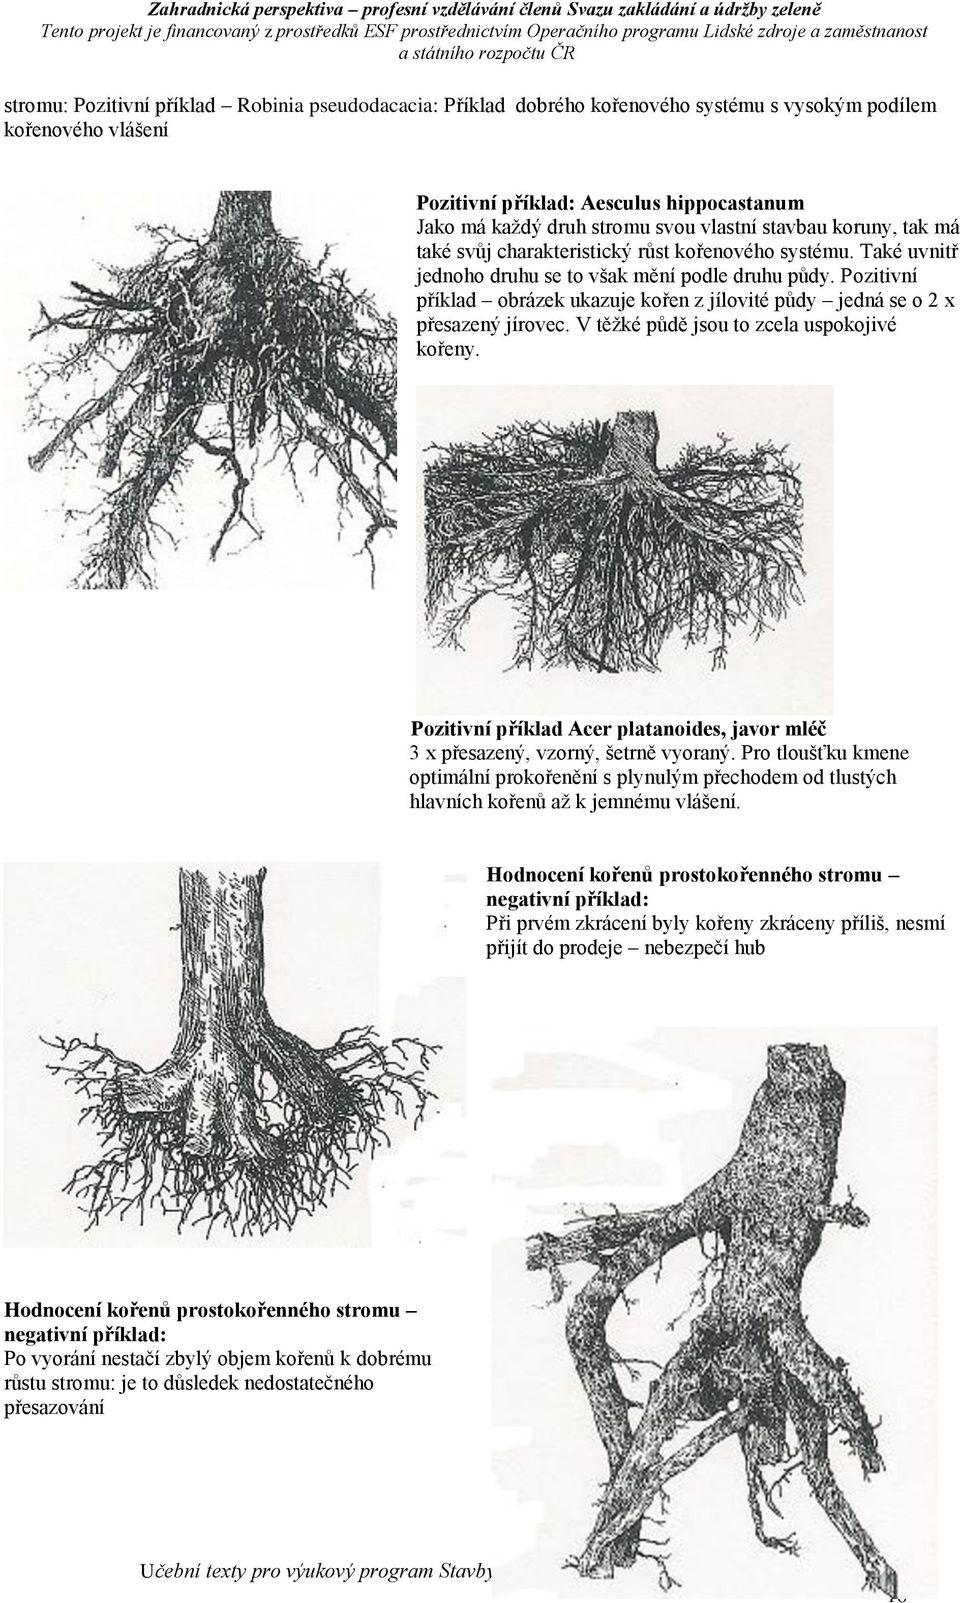 Pozitivní příklad obrázek ukazuje kořen z jílovité půdy jedná se o 2 x přesazený jírovec. V těžké půdě jsou to zcela uspokojivé kořeny.